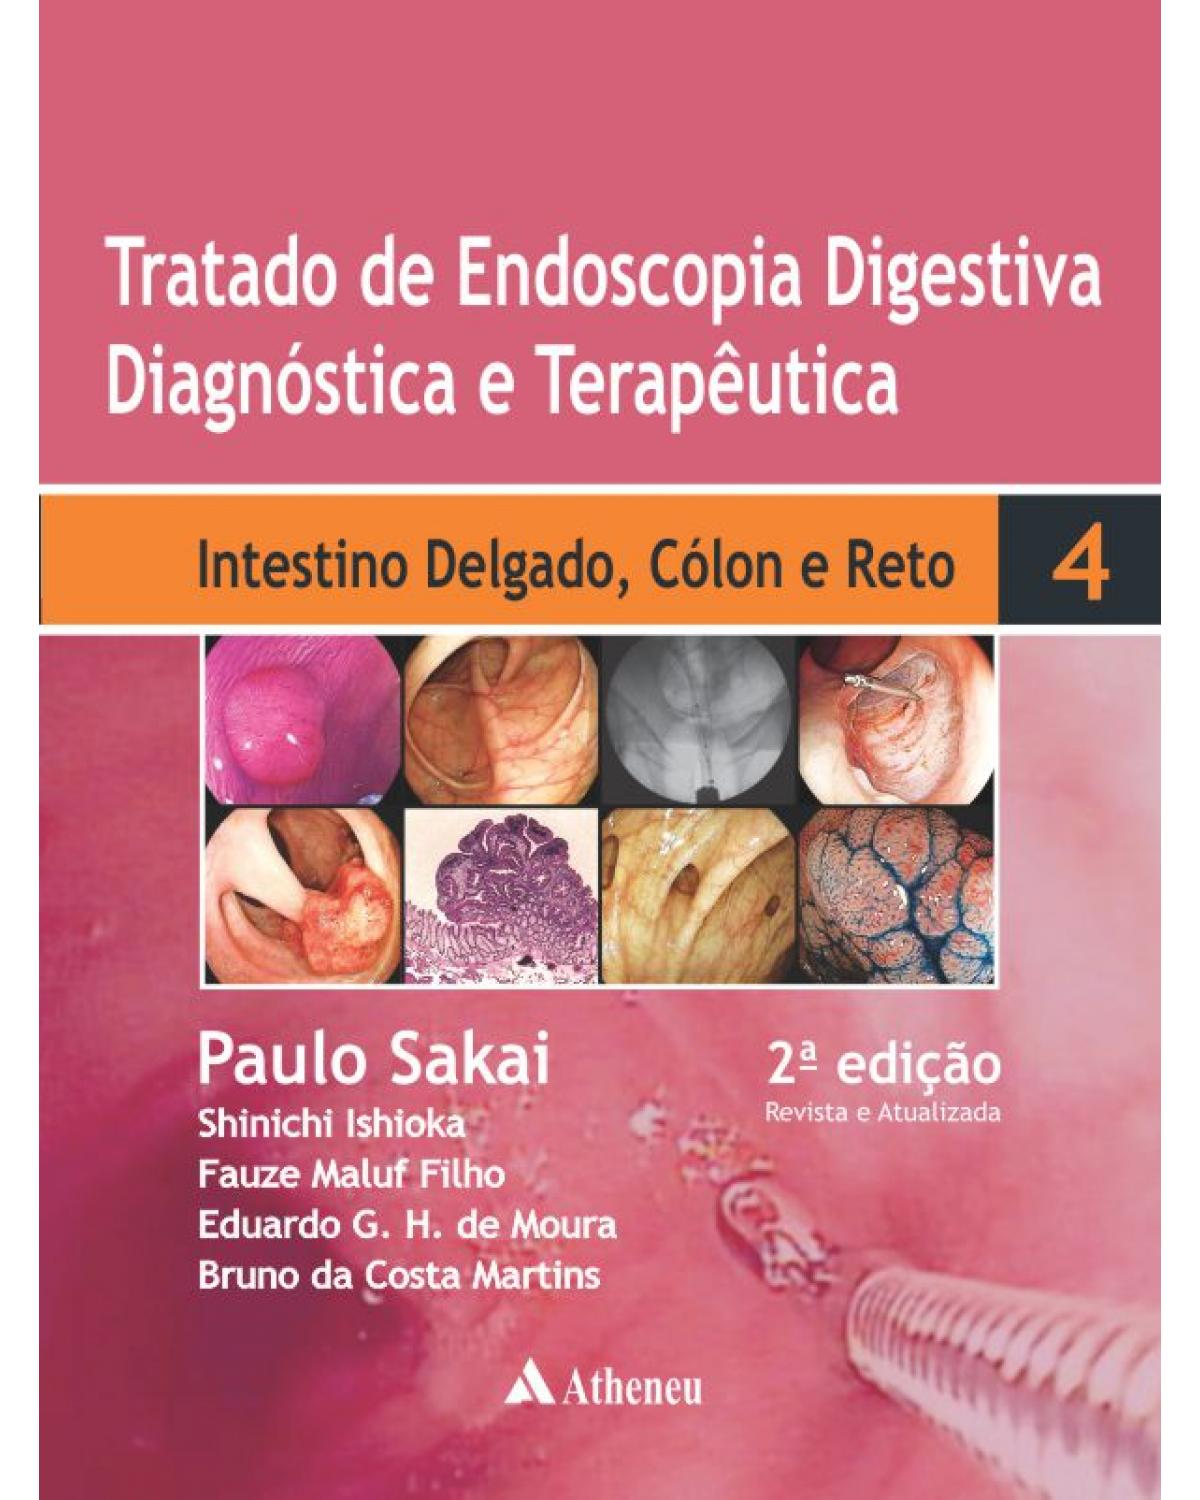 Tratado de endoscopia digestiva diagnóstica e terapêutica - Volume 4: intestino delgado, cólon e reto - 2ª Edição | 2015